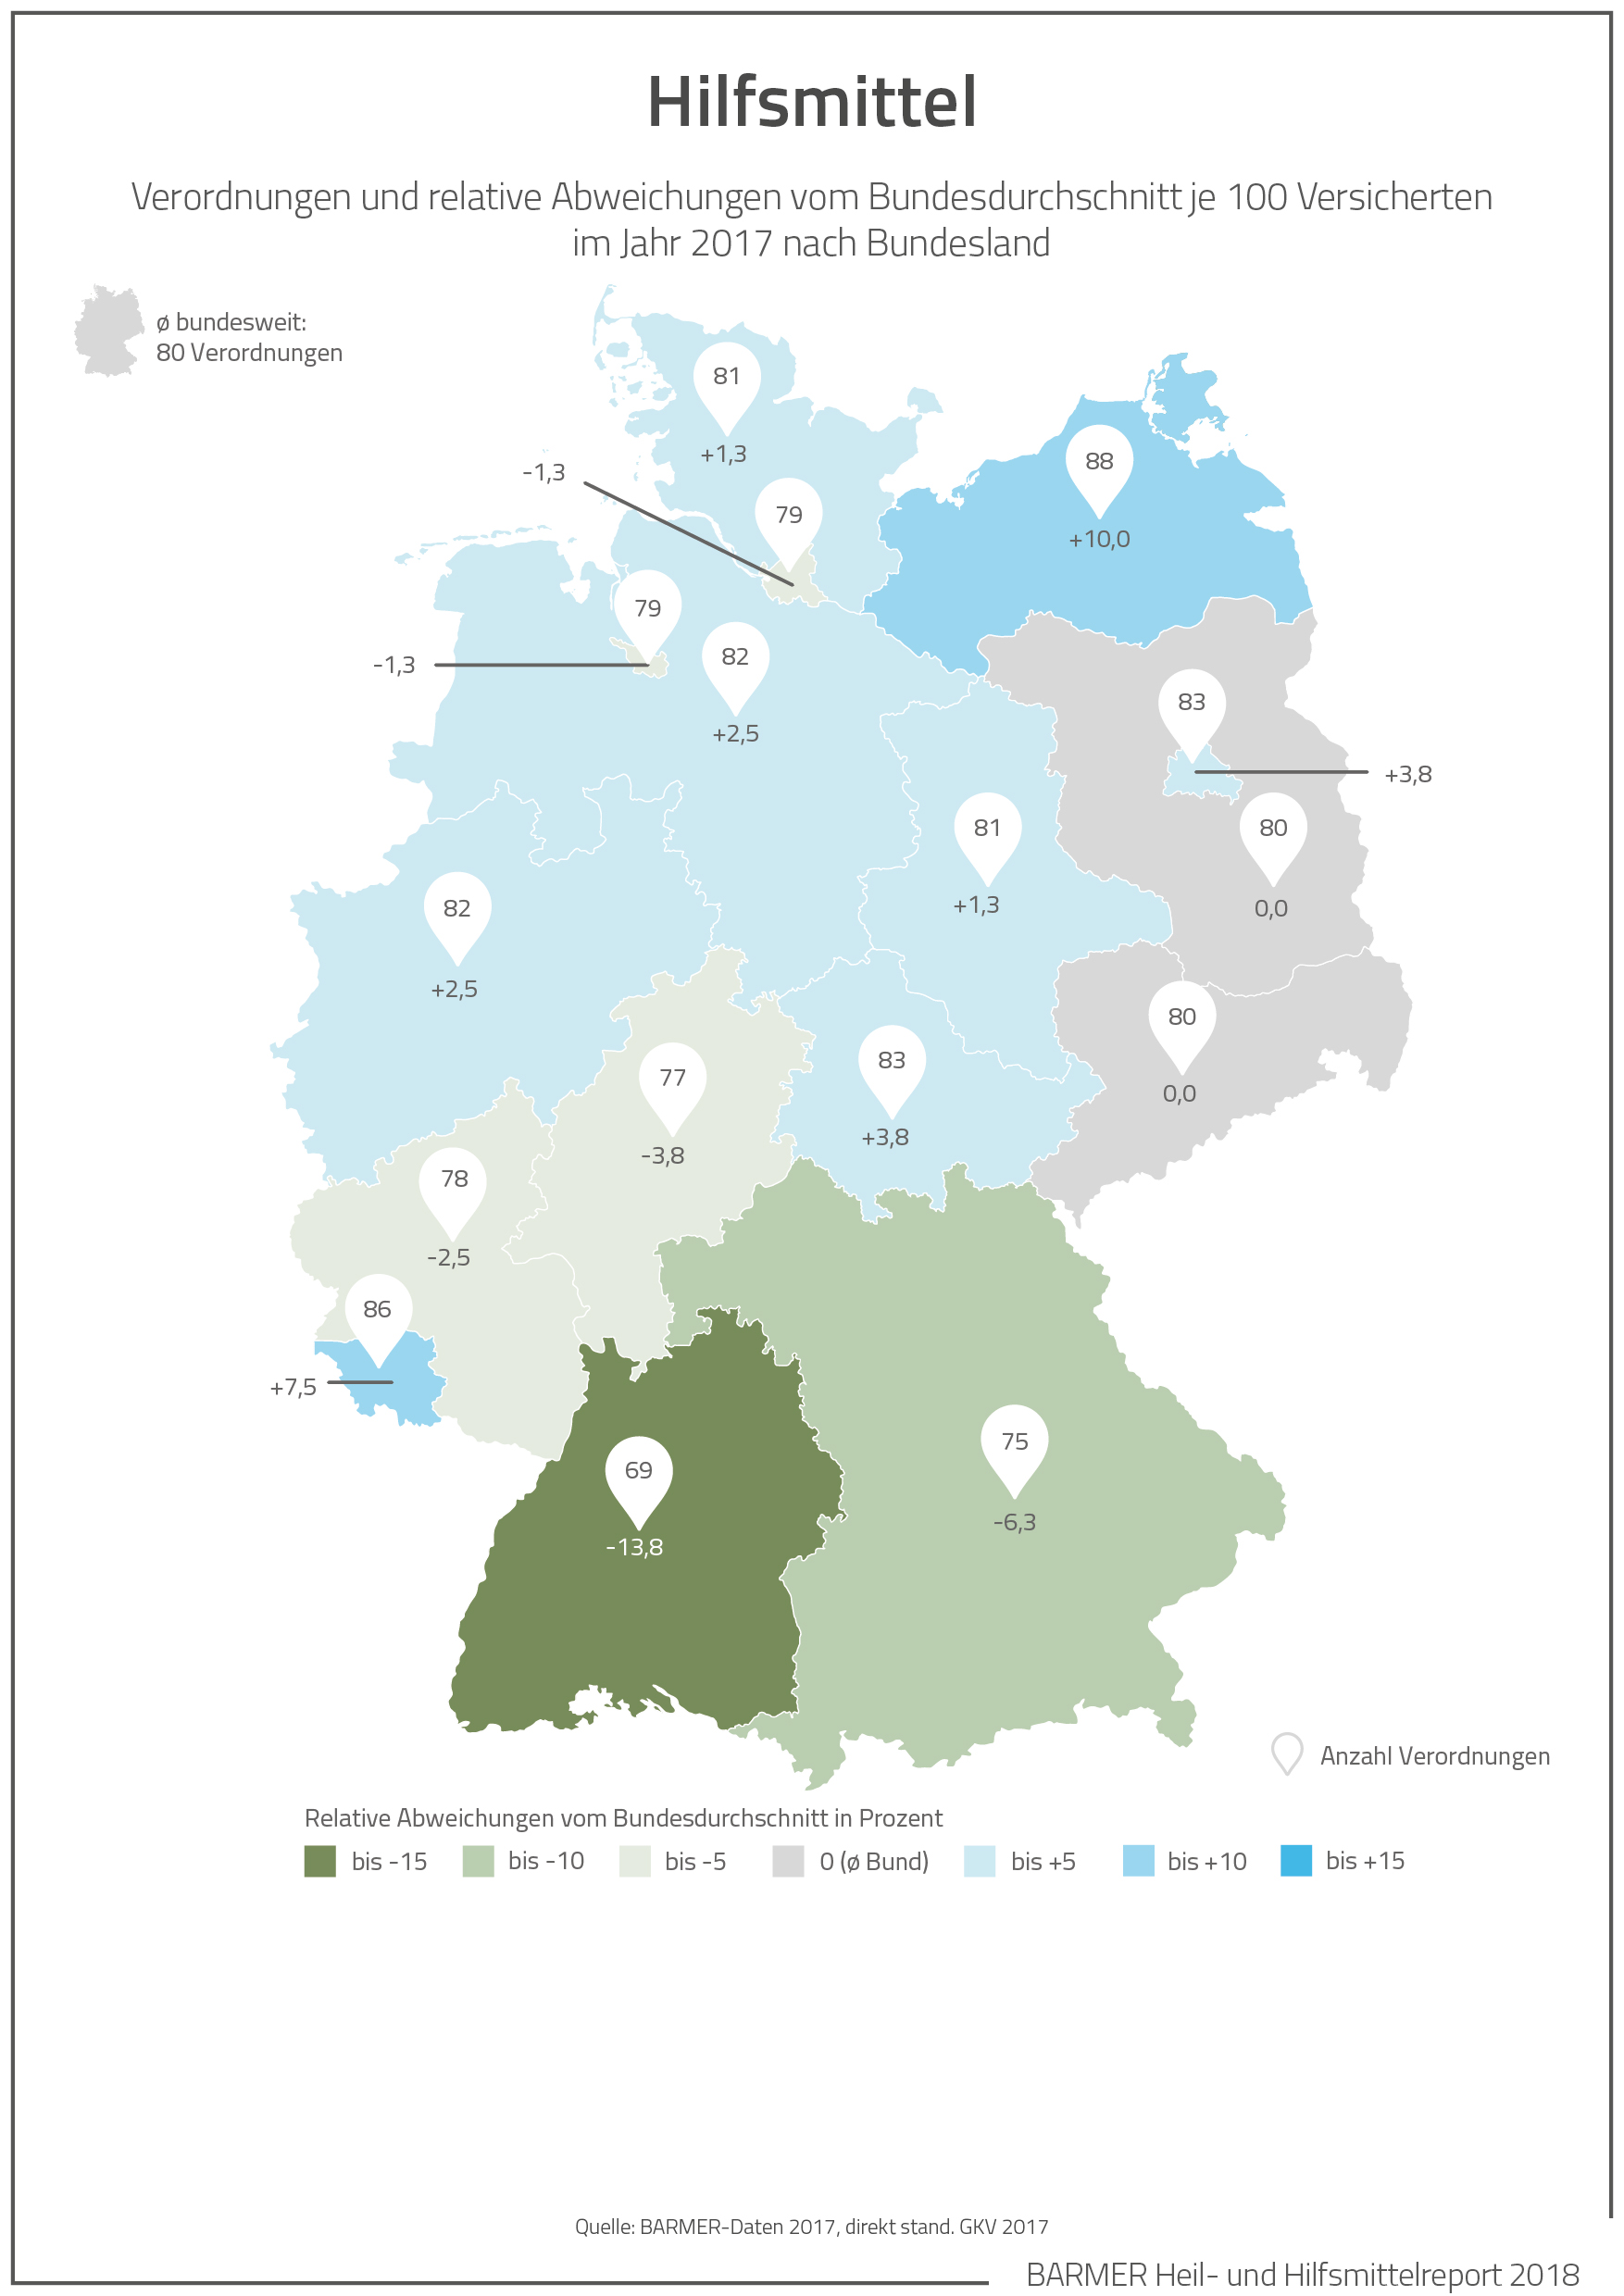 Deutschlandkarte mit Werten zur Verordnung von Hilfsmitteln je nach Bundesland